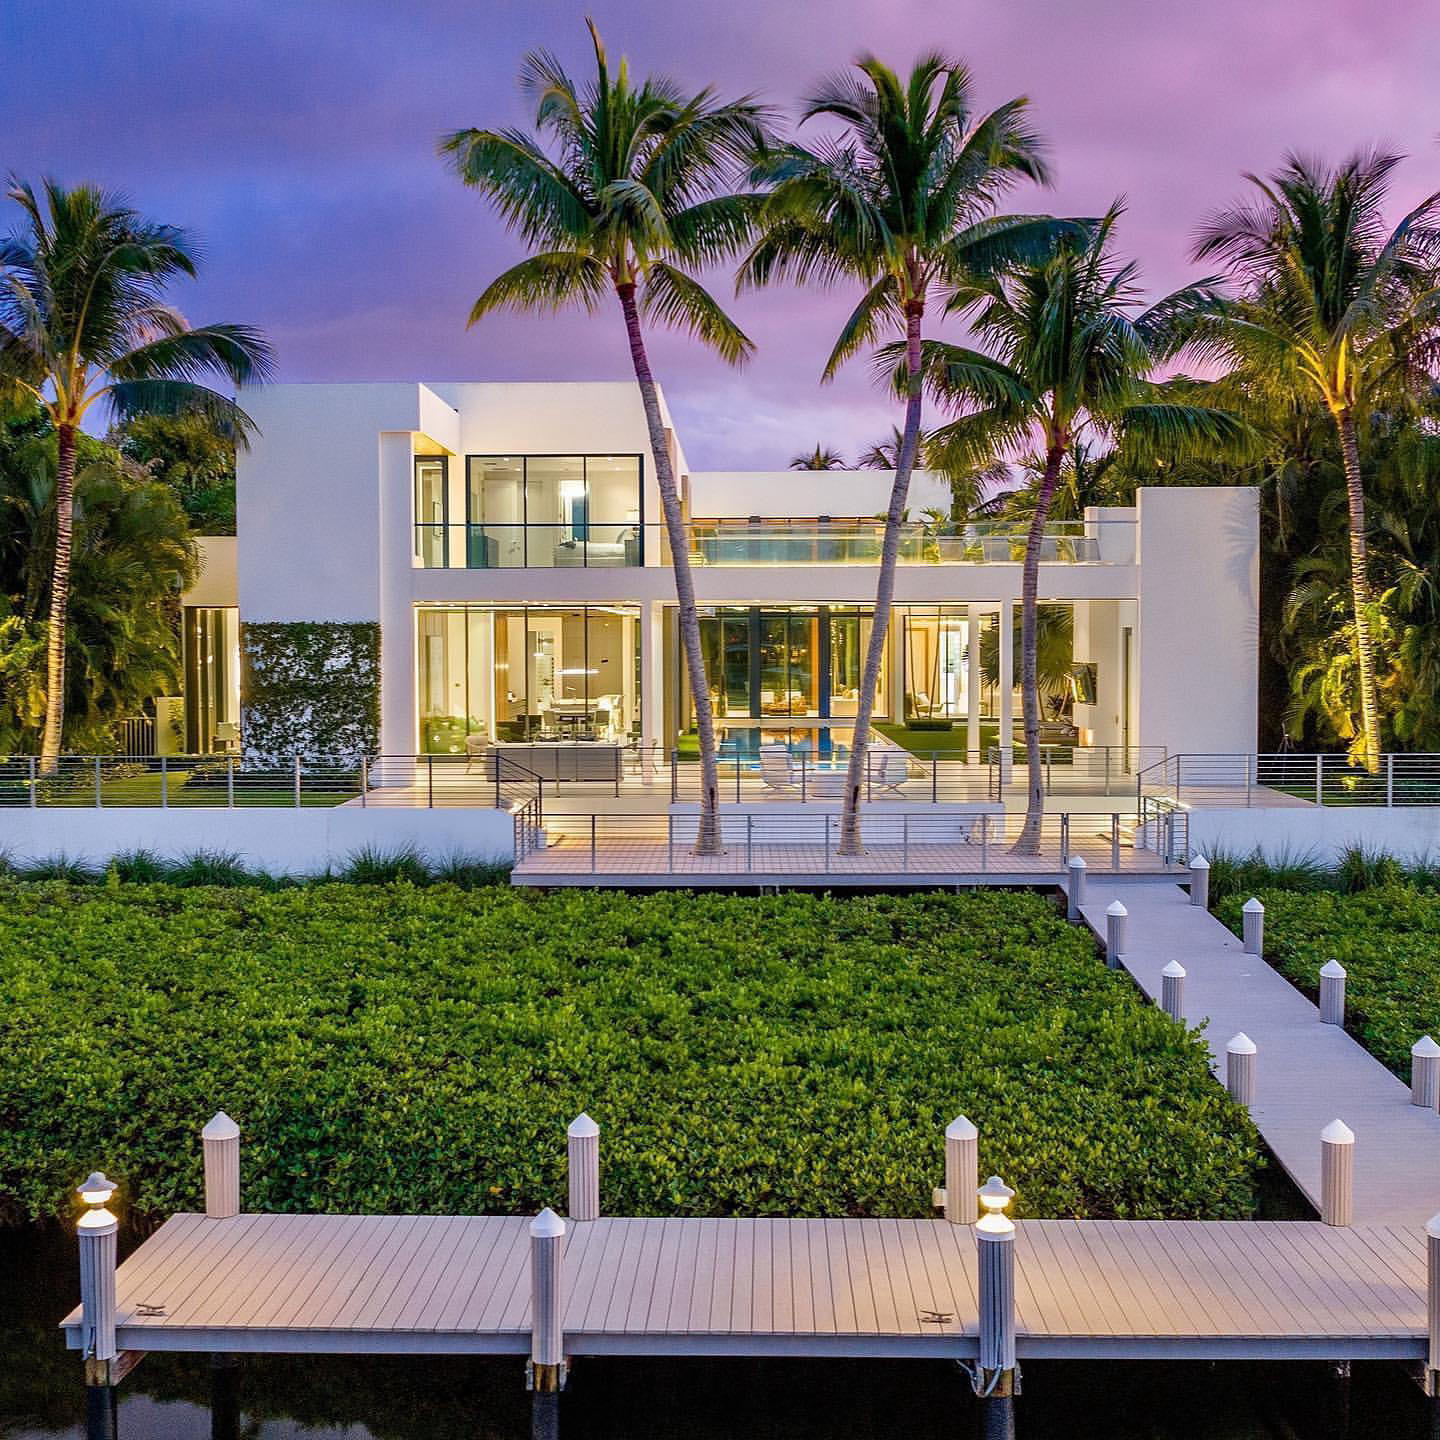 image  1 $18,500,000 in Jupiter, Florida gets you this stunning waterfront estate